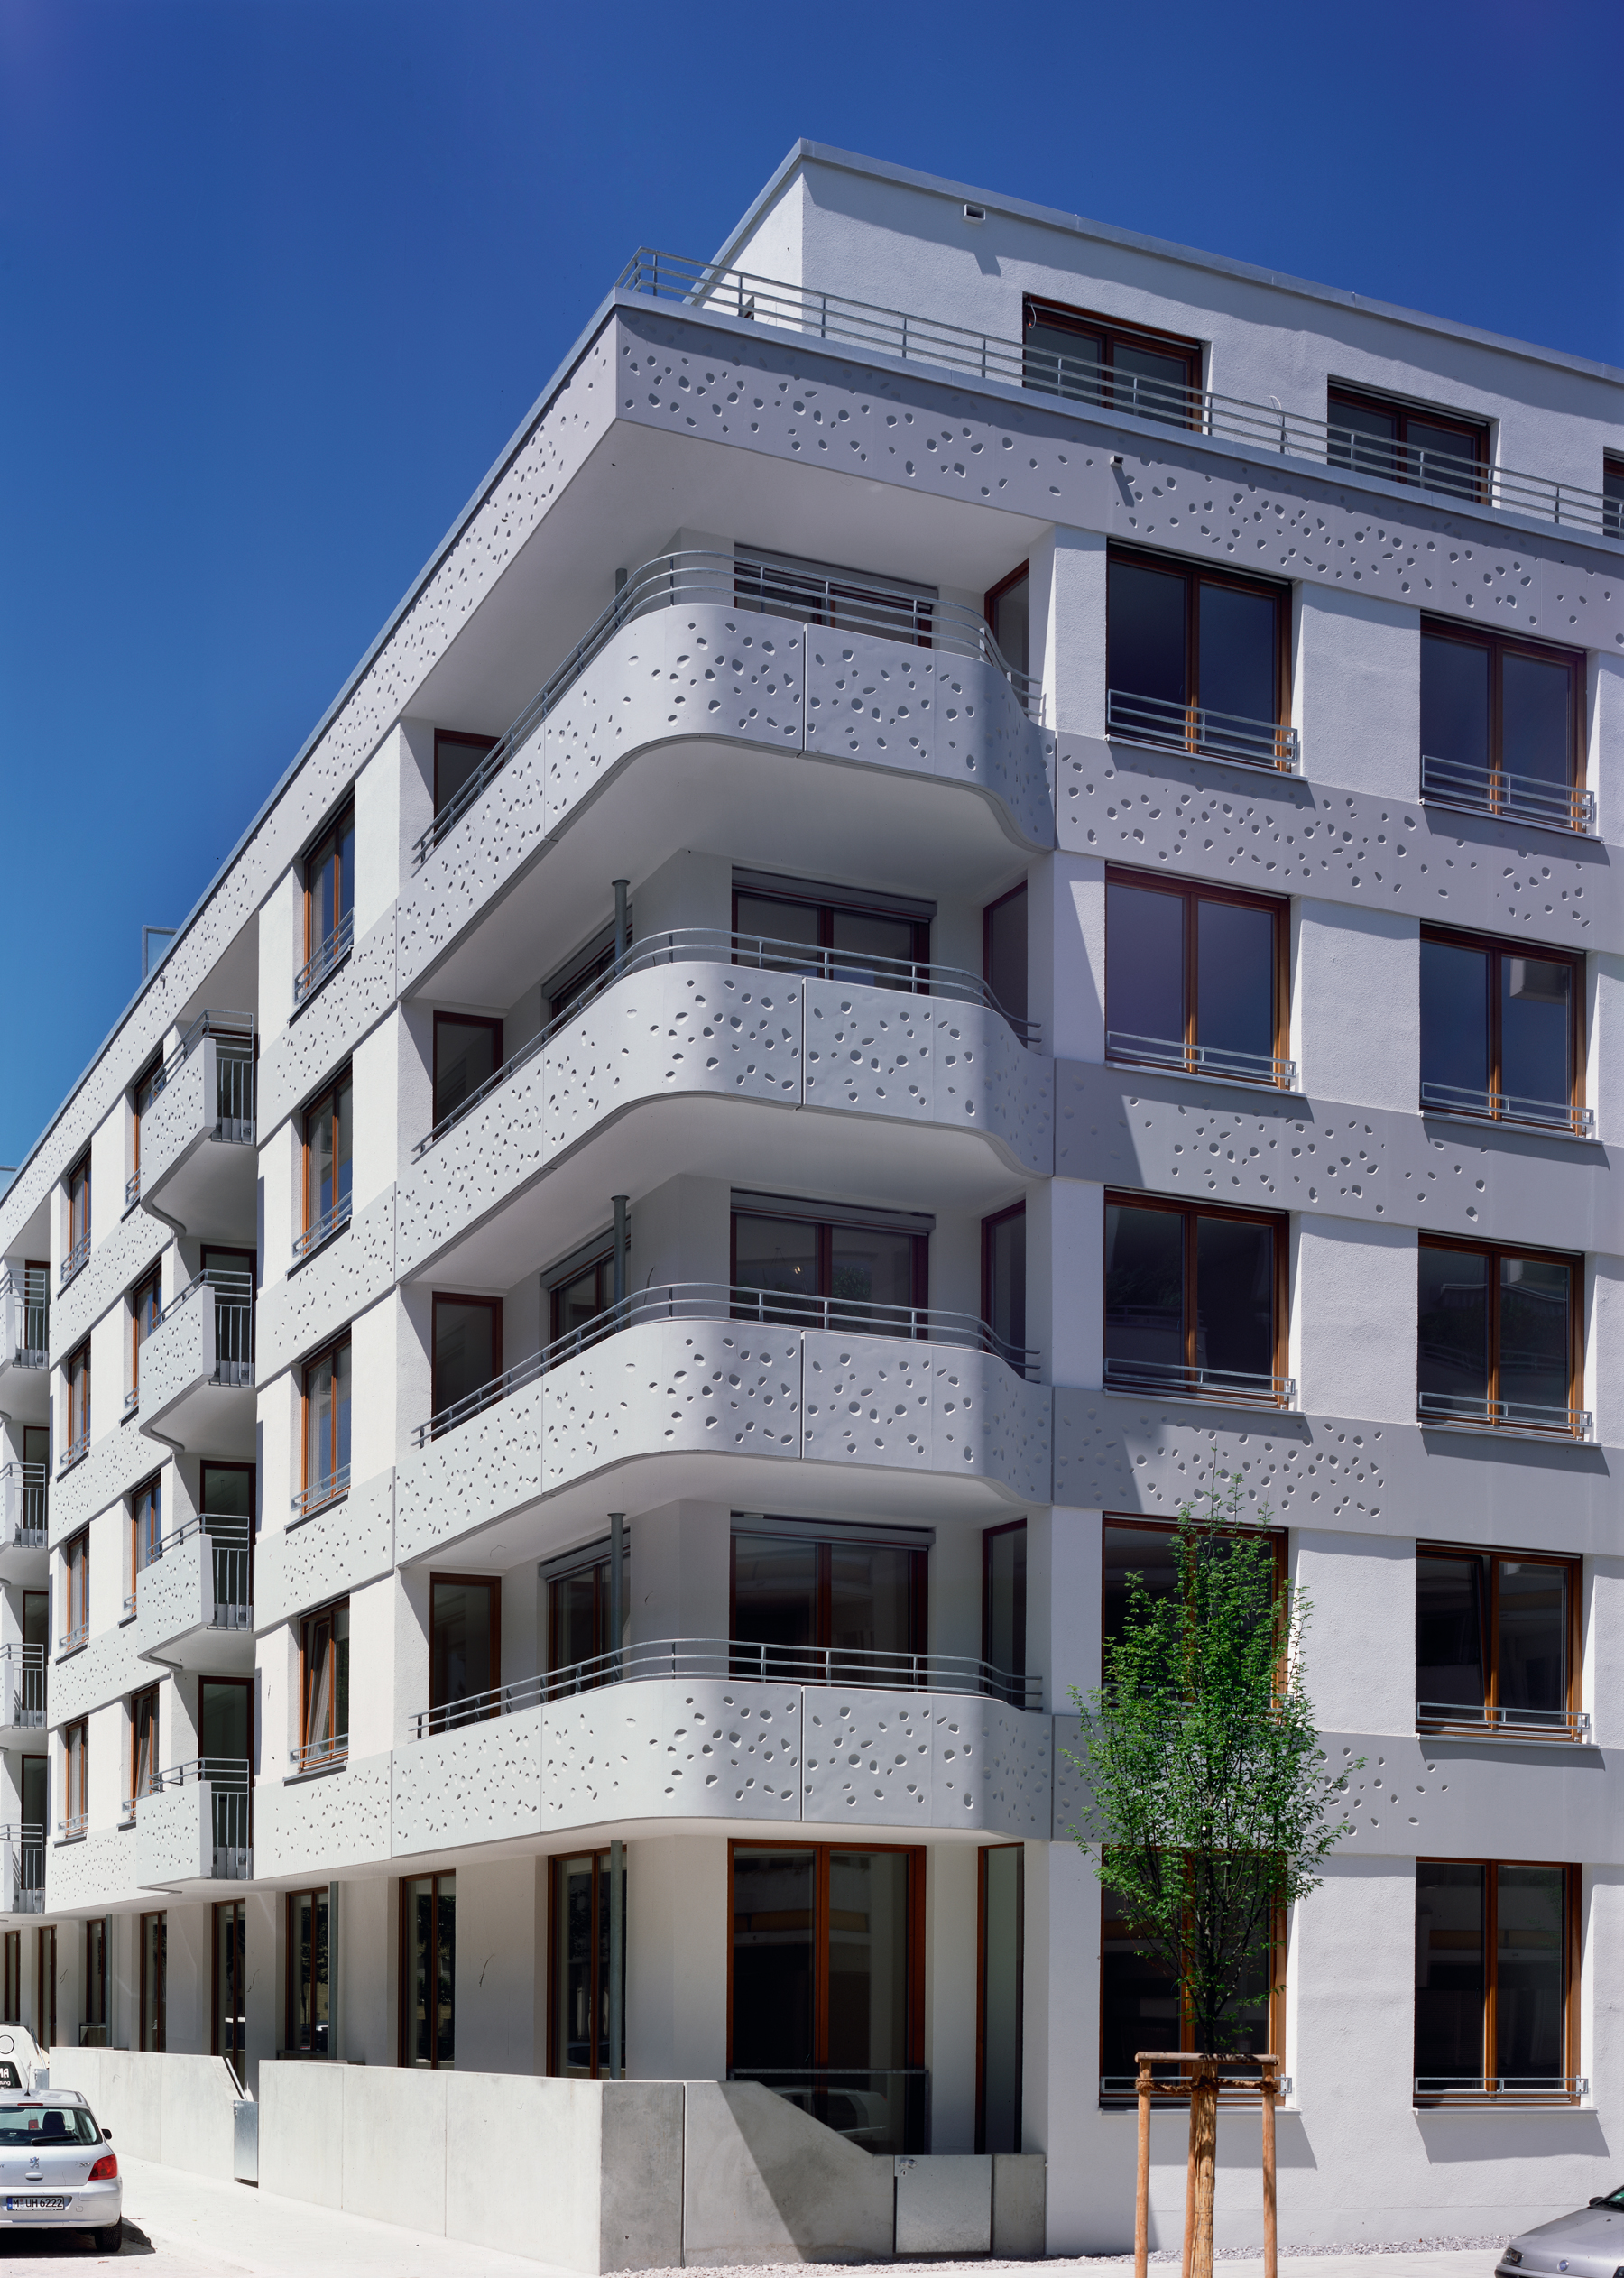 StoTherm Vario je obľúbenou voľnou pri zateplení panelových a bytových domov. Pre zateplenie bytového komplexu v Mníchove bol použiťý systém StoTherm Vario v kombinácií s architektonickými prvkami StoDeco.